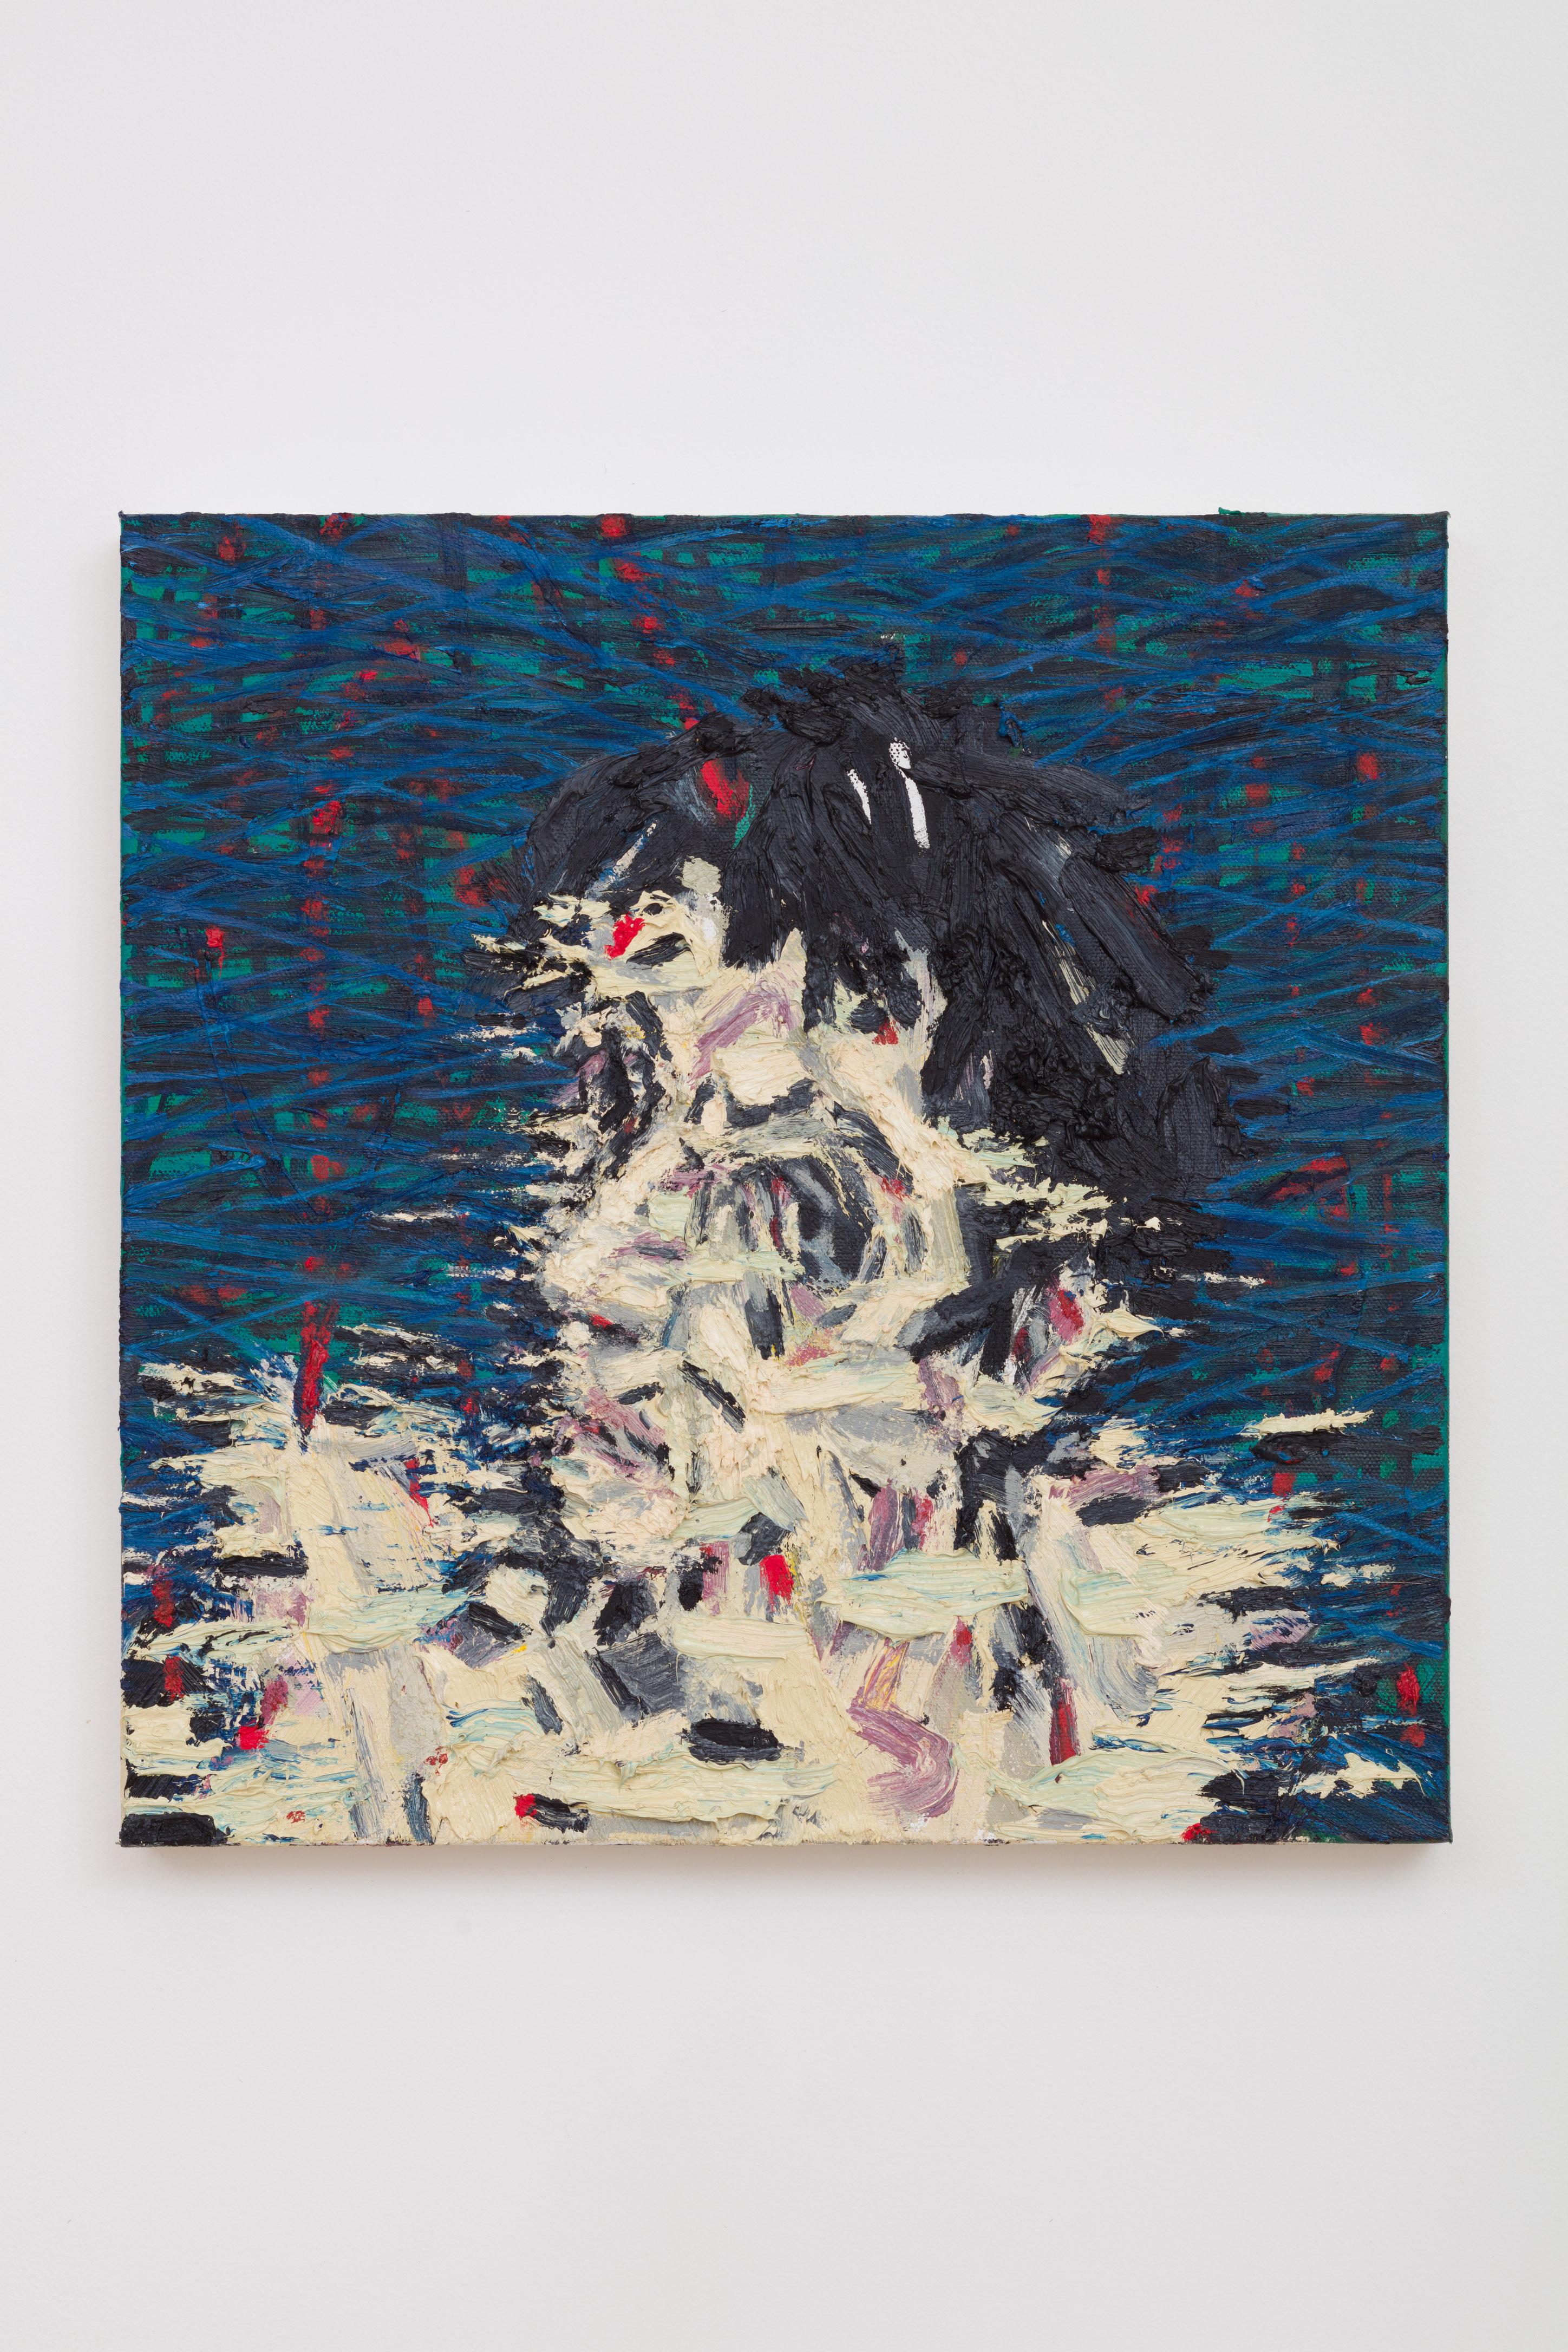 HUMAN ATMOSPHERE 8 – zeitgenössisches Kunstwerk, Öl auf Leinwand – Painting von Michael Pemberton